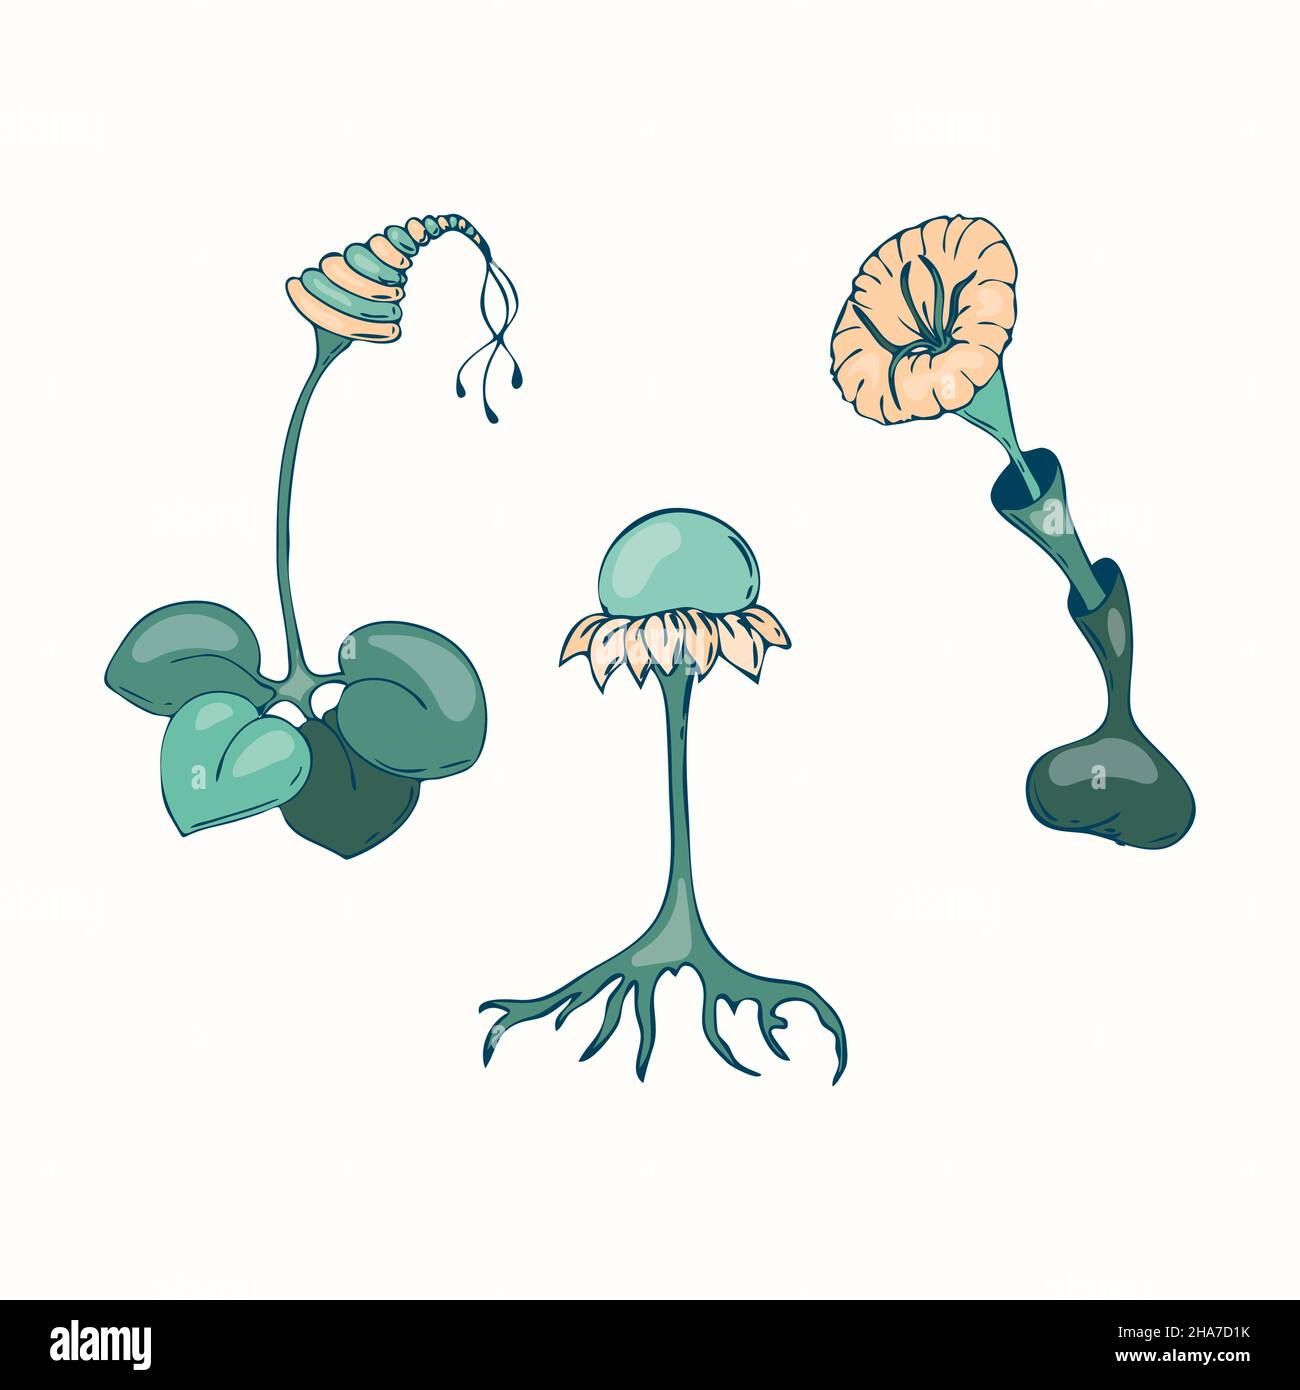 Des champignons fantastiques et irréalistes, dessinant à la main, sur fond blanc et isolé.Illustration vectorielle Illustration de Vecteur